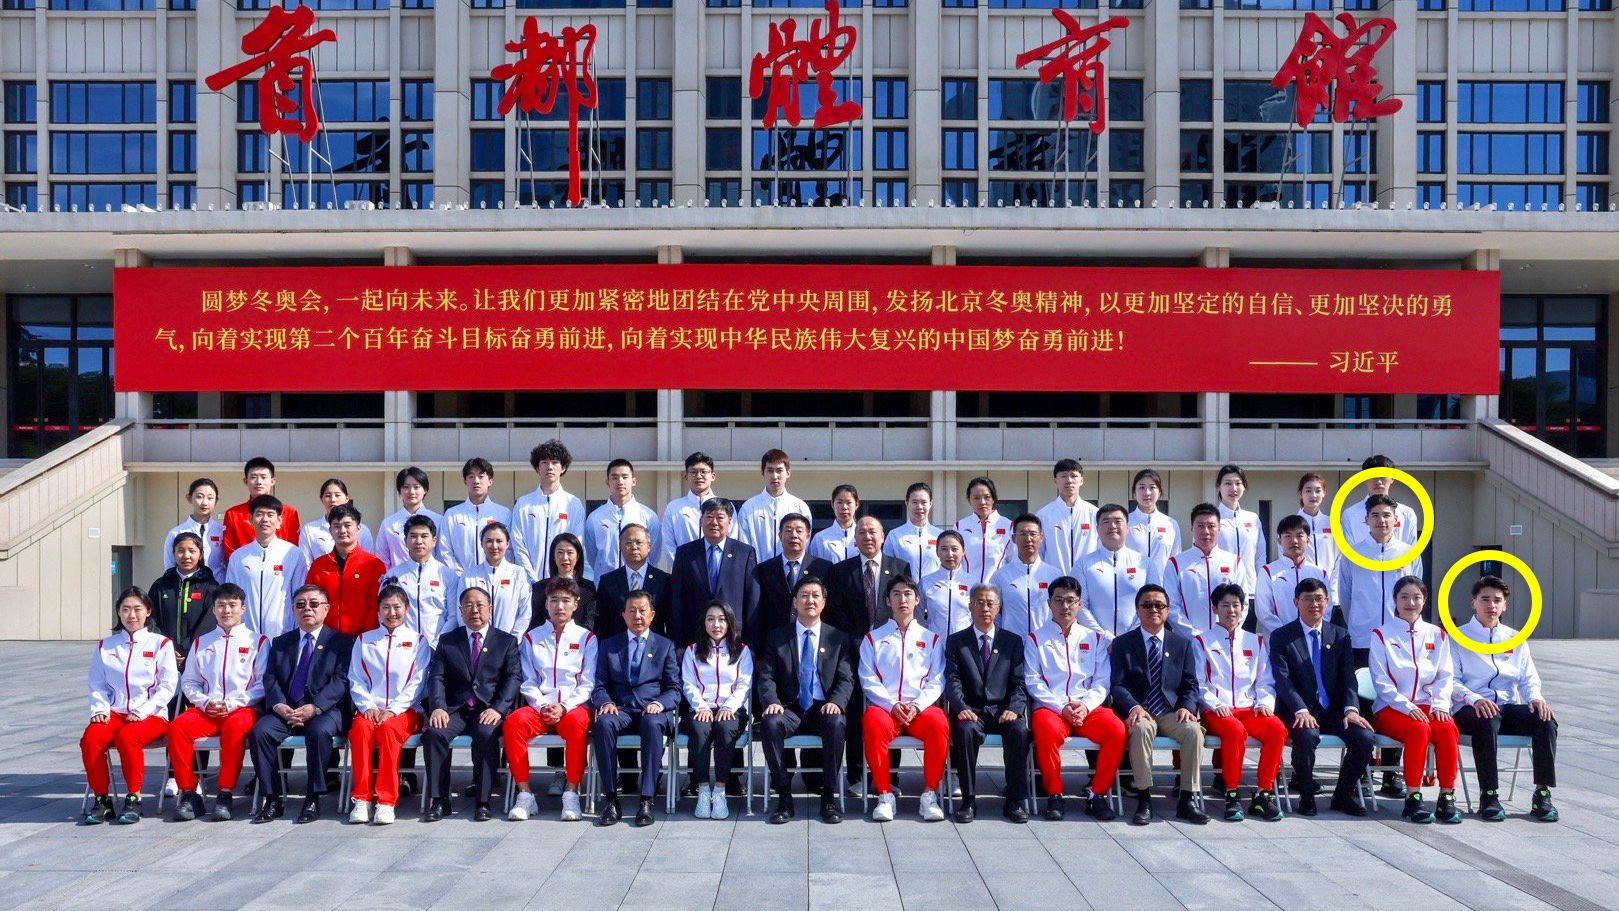 A Liu testvérek a kínai kommunista párt eszmei útmutatásai mentén készülhetnek az olimpiára